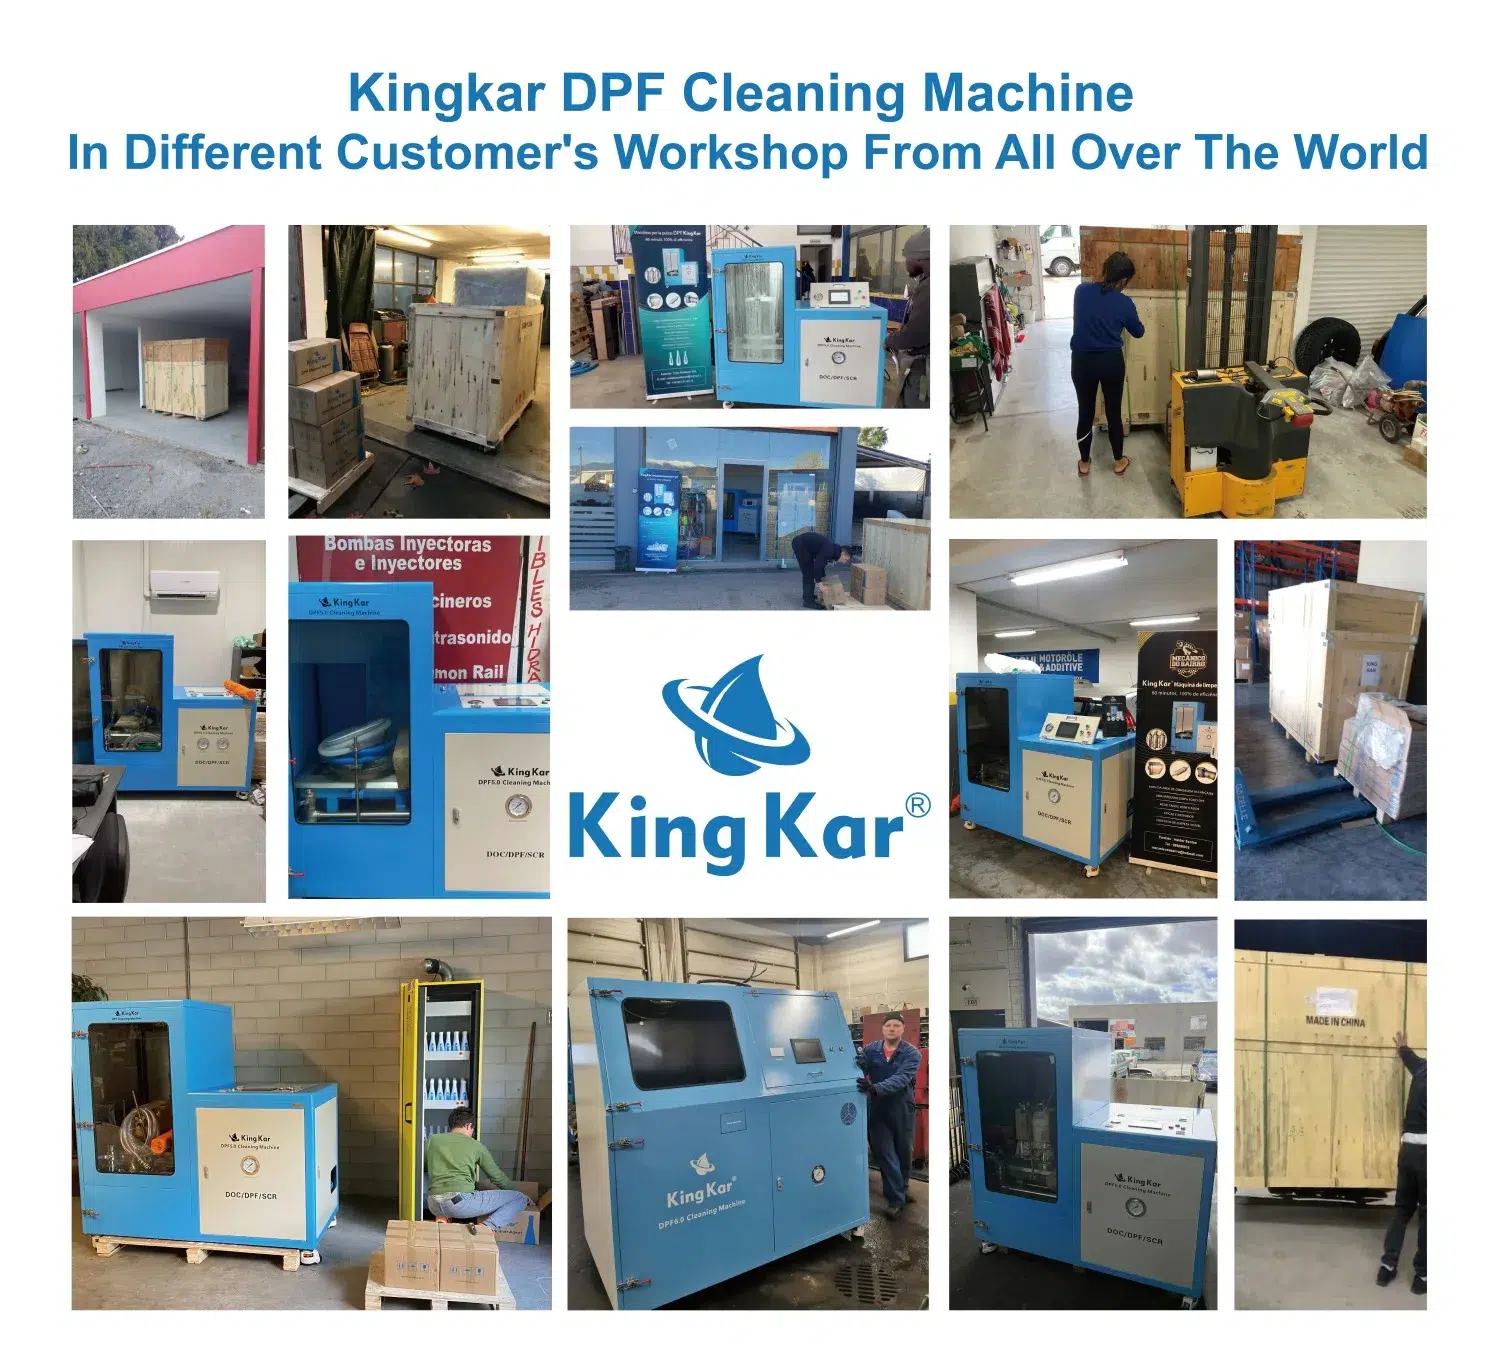 tec 4 dpf cleaning machine - KingKar